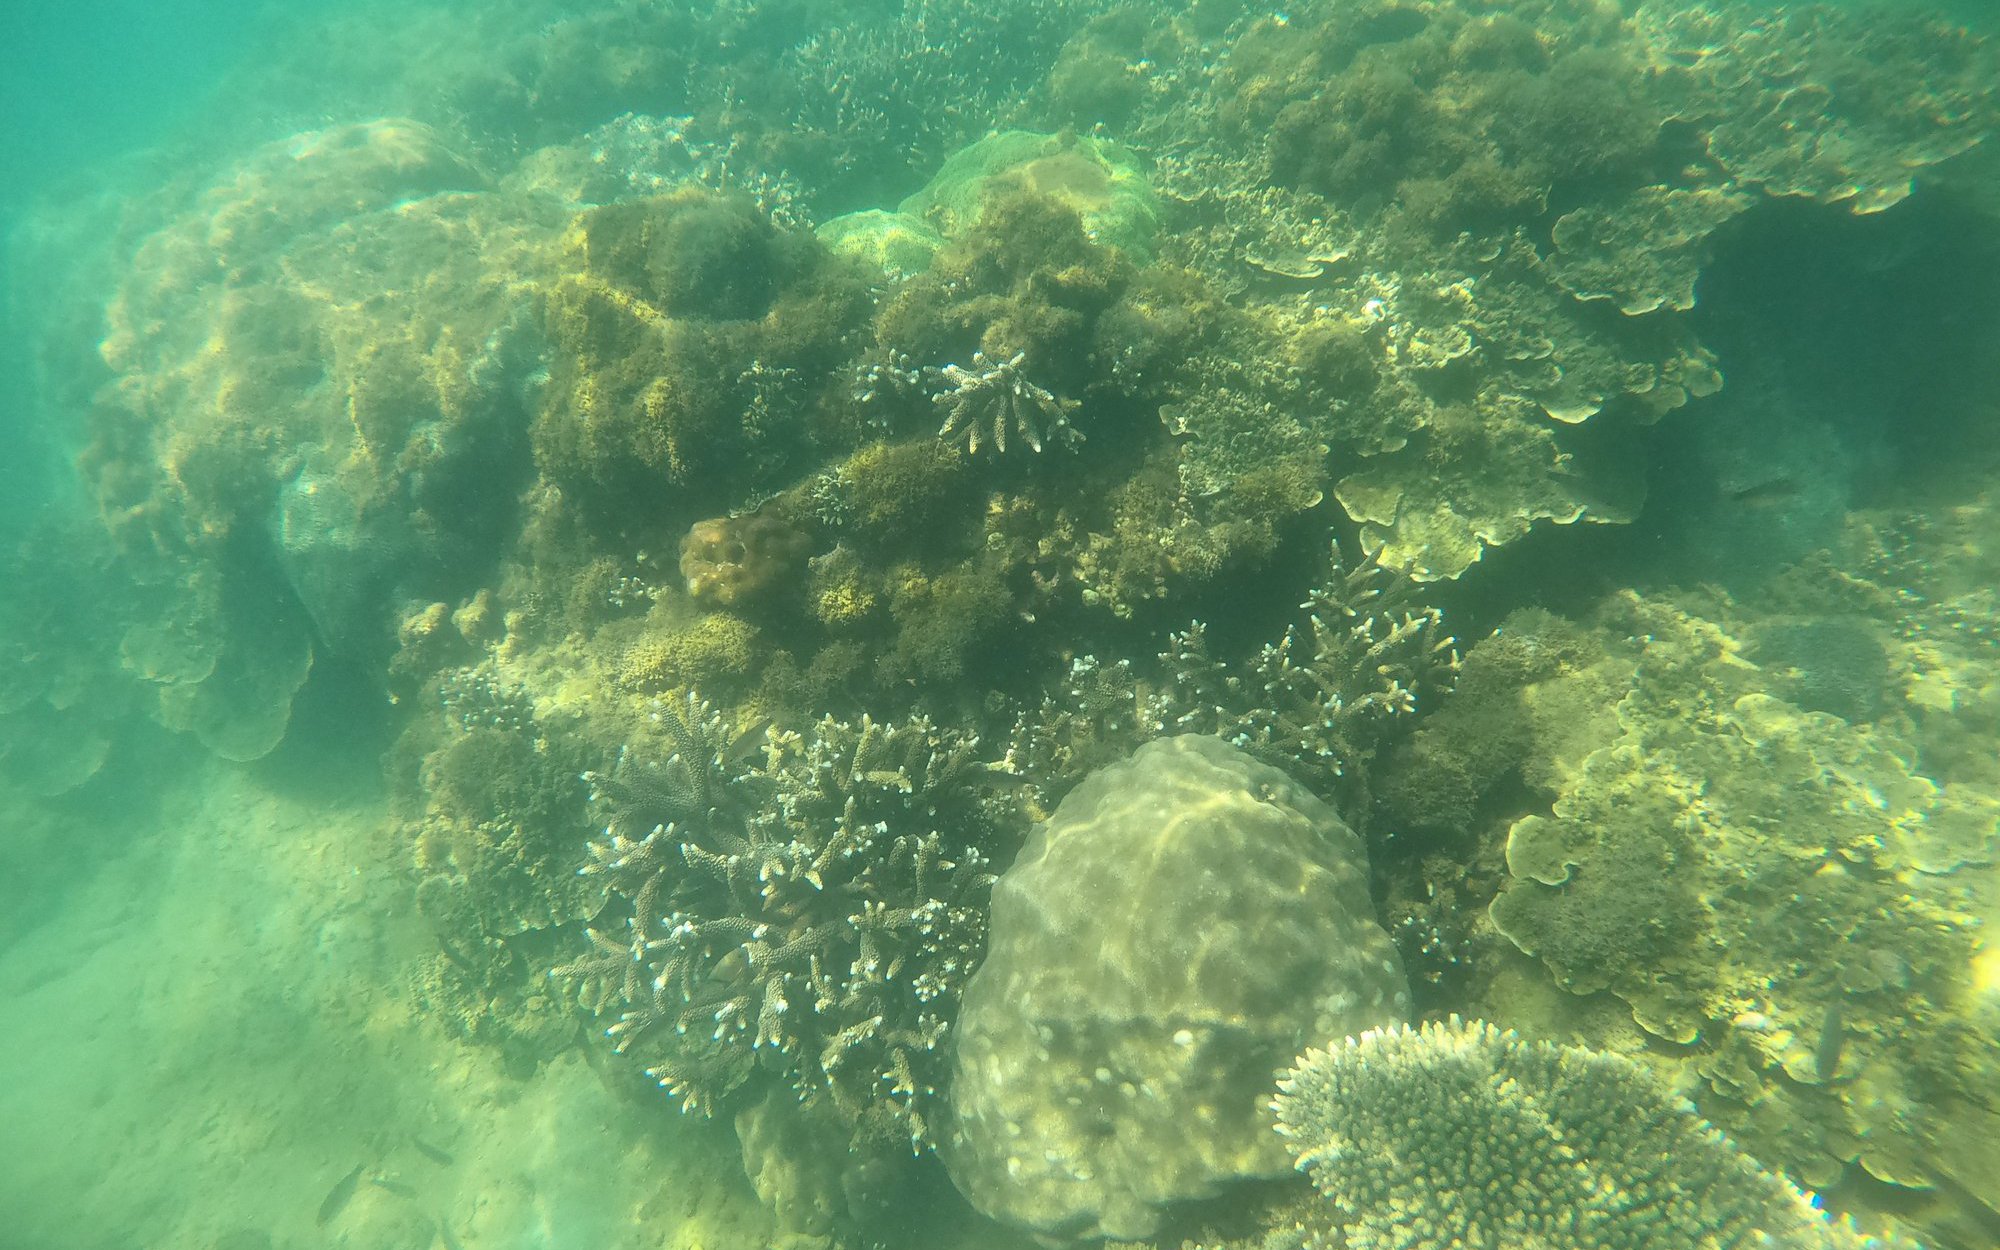 Chất lượng san hô ở Hòn Mun suy giảm mạnh